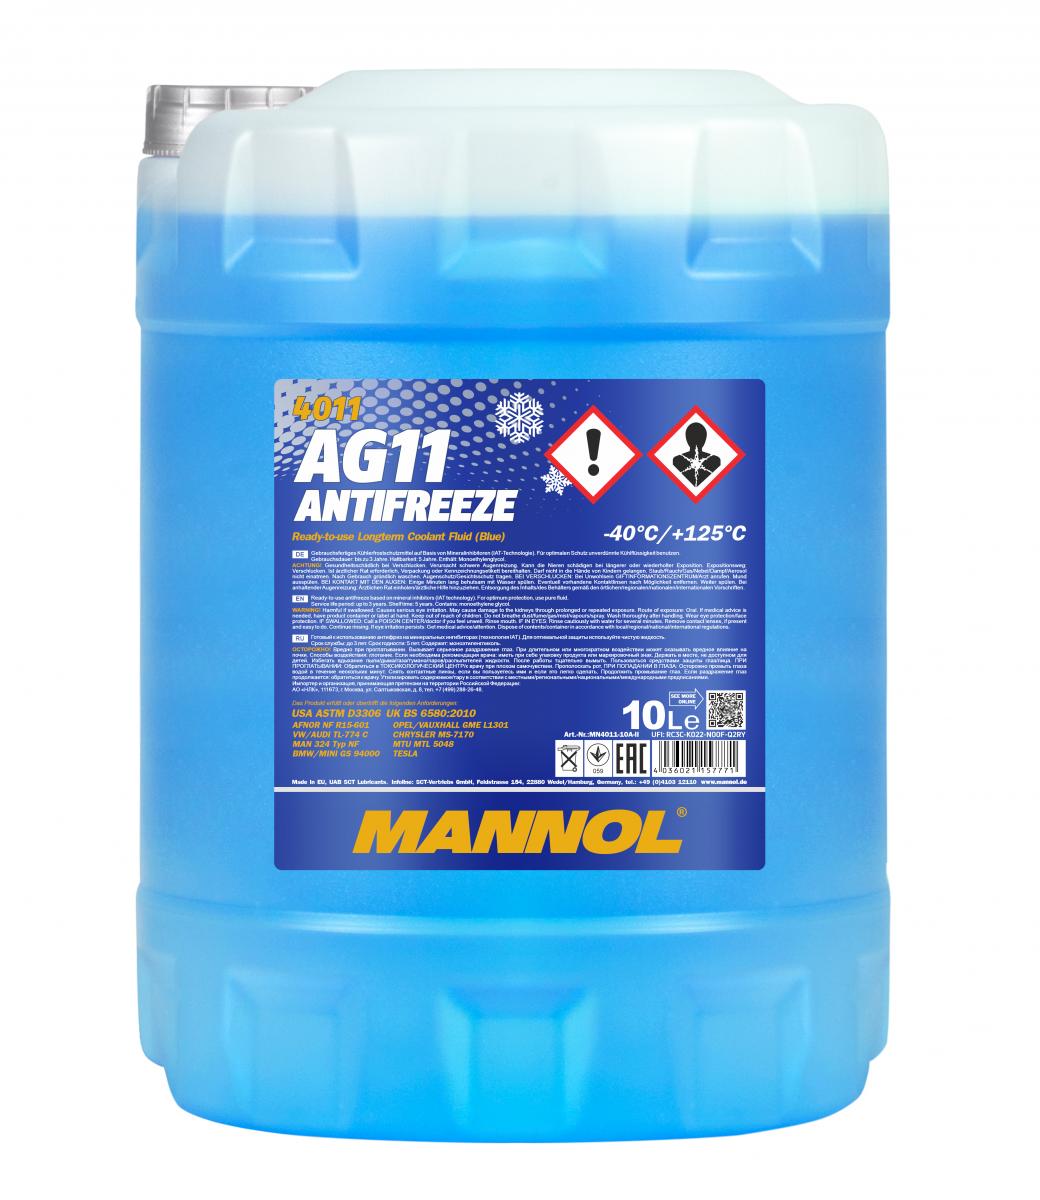 30 Liter (3x10) MANNOL Antifreeze AG11 Fertiggemisch blau -40°C Kühlerfrostschutz